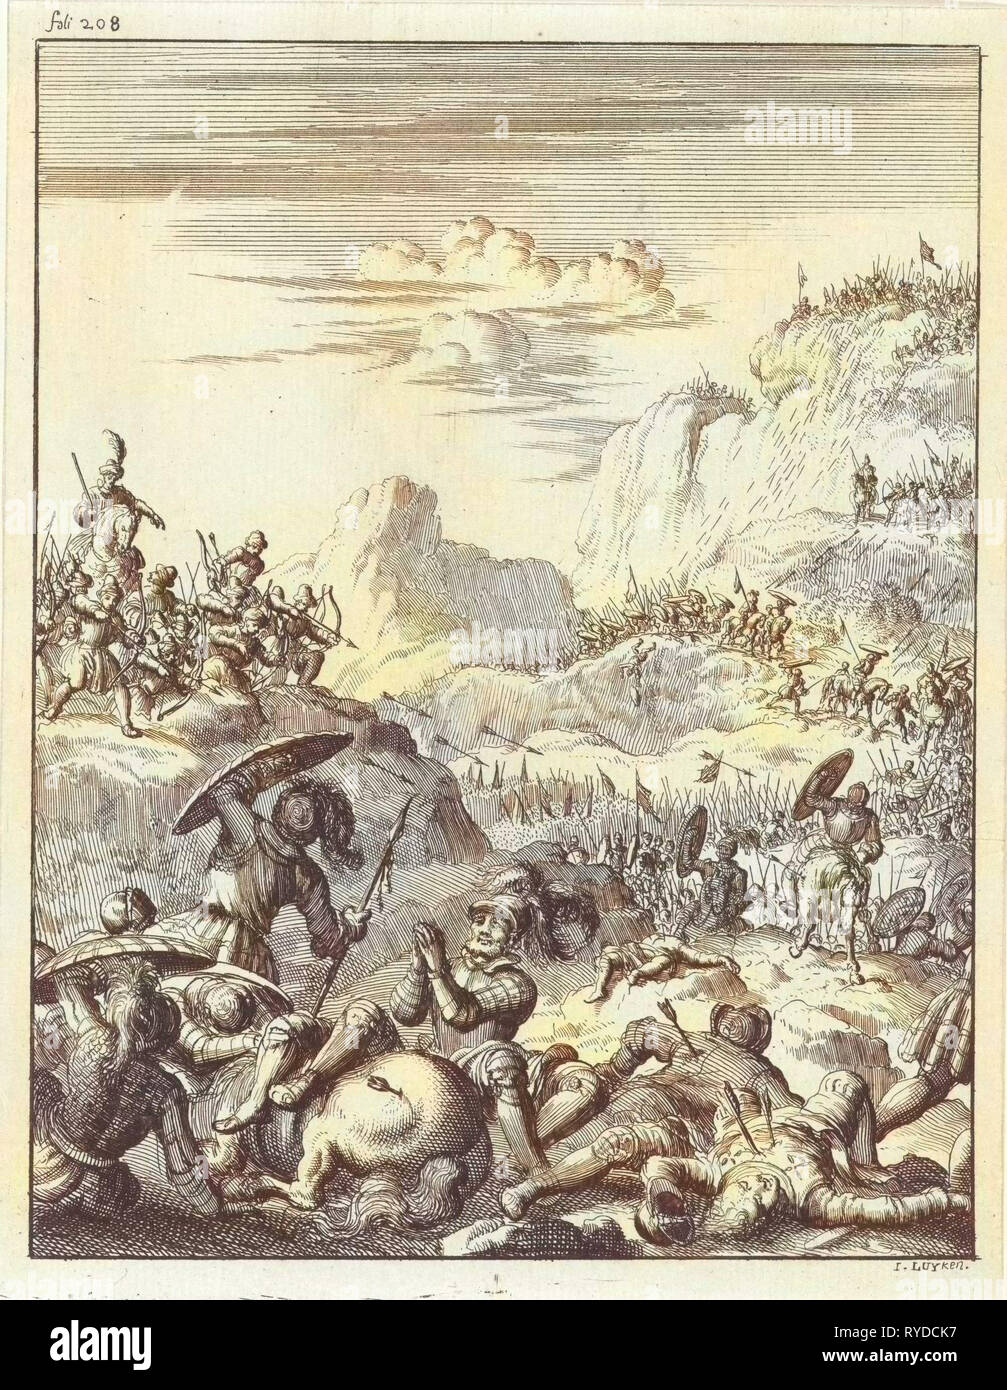 Esercito dell'imperatore Corrado III tradito e in montagna hanno razziato dai Saraceni, stampa maker: Jan Luyken, Timoteo dieci Hoorn, 1683 Foto Stock